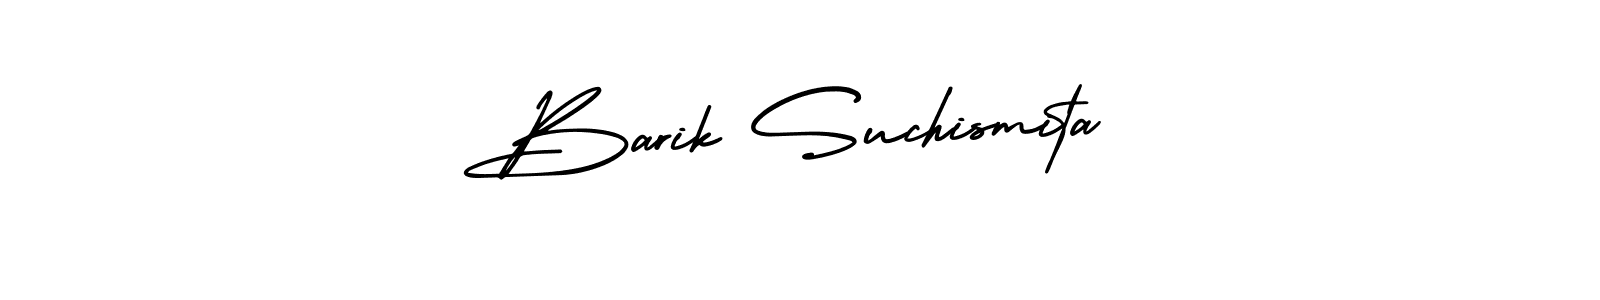 How to Draw Barik Suchismita signature style? AmerikaSignatureDemo-Regular is a latest design signature styles for name Barik Suchismita. Barik Suchismita signature style 3 images and pictures png